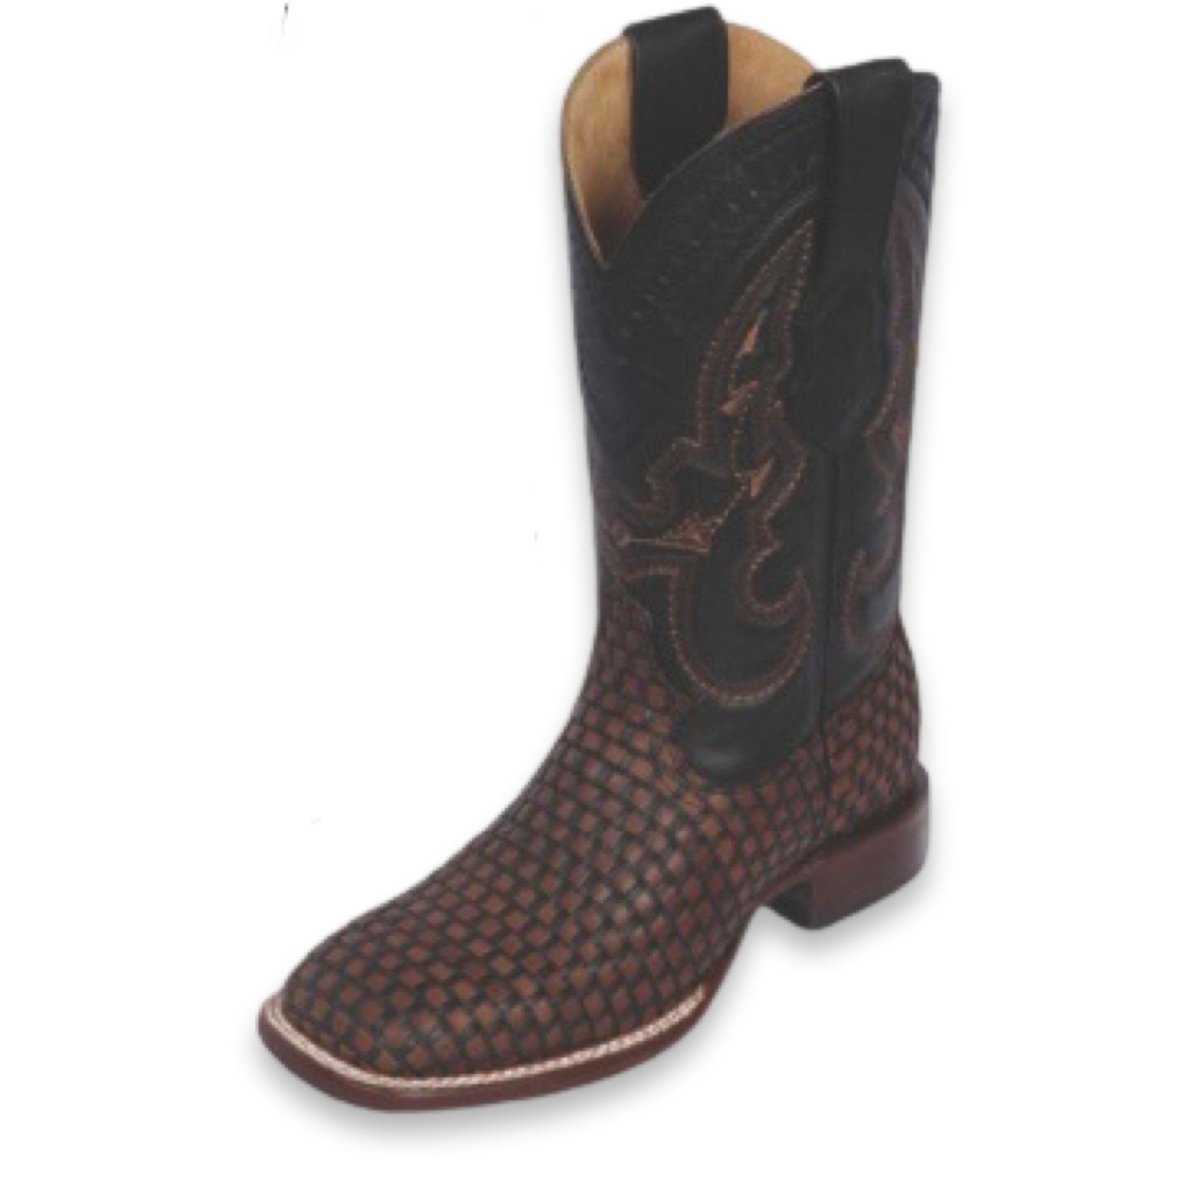 Men's Hand Embroidered Rodeo Boot - CharroAzteca.com